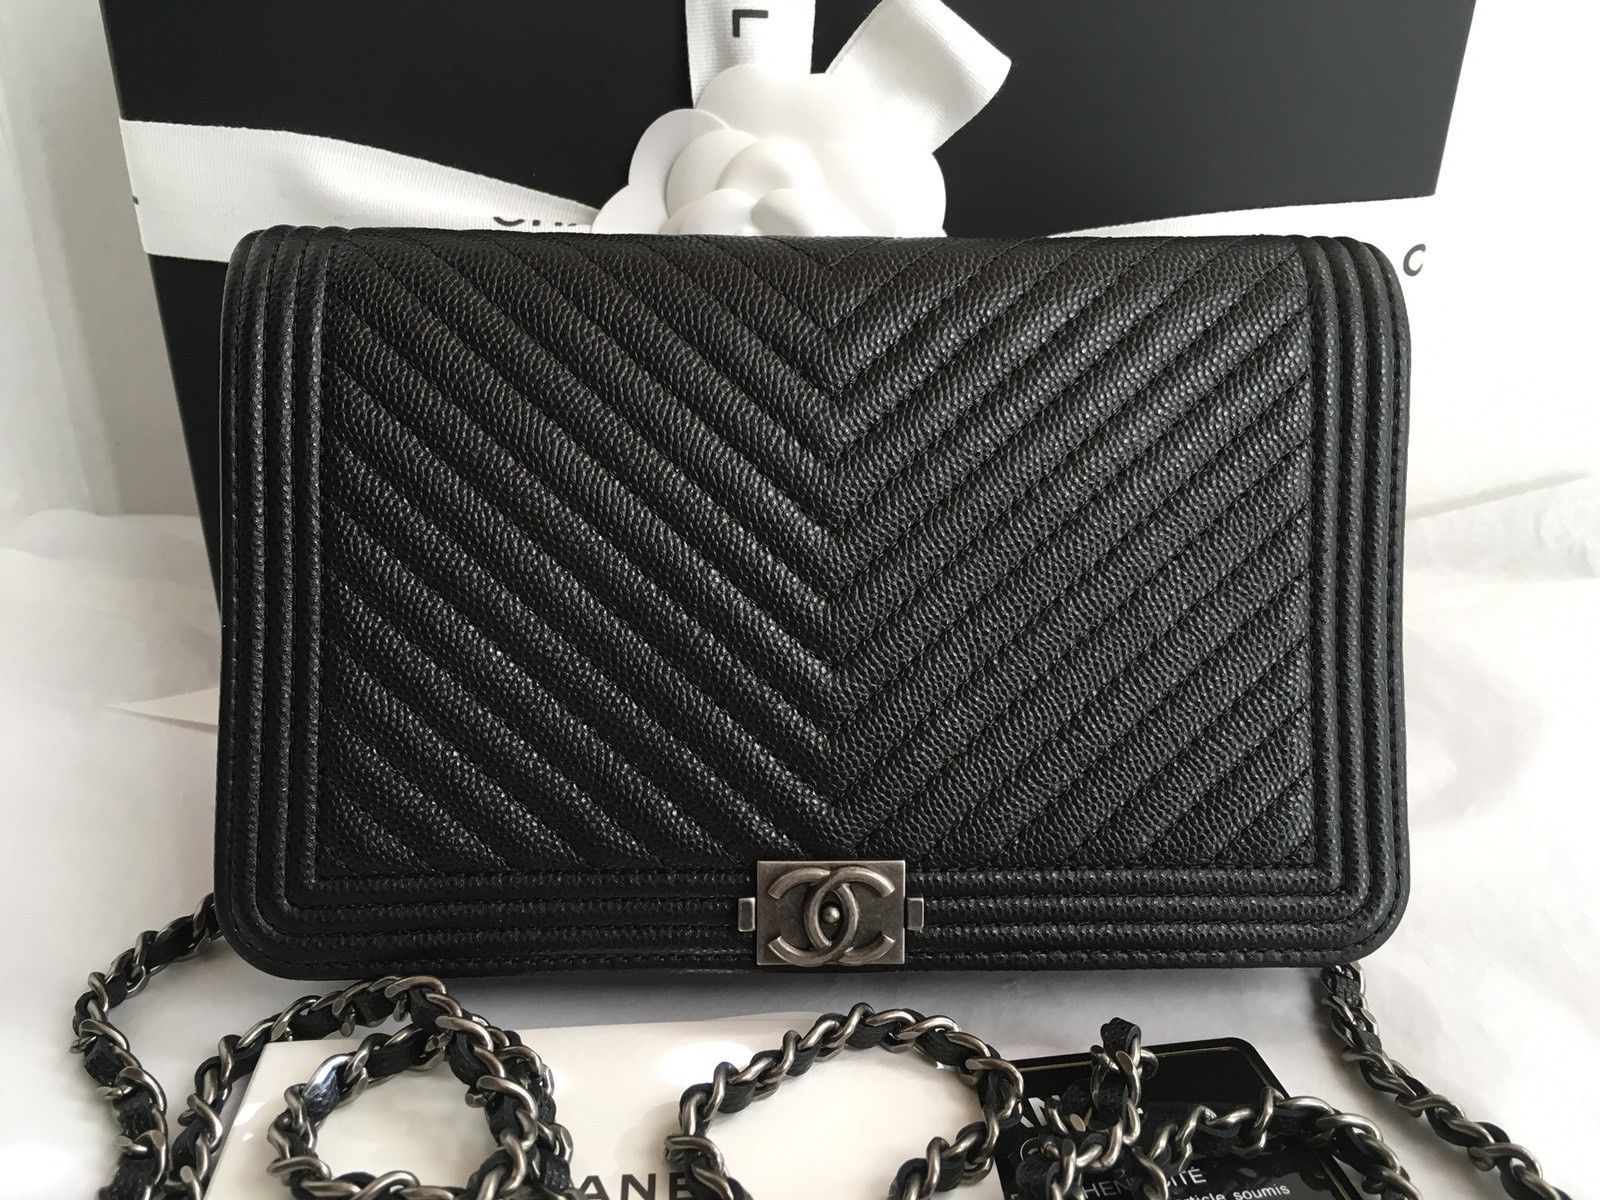 First luxury bag purchase - help? (YSL WOC, Dionysus, Chanel WOC